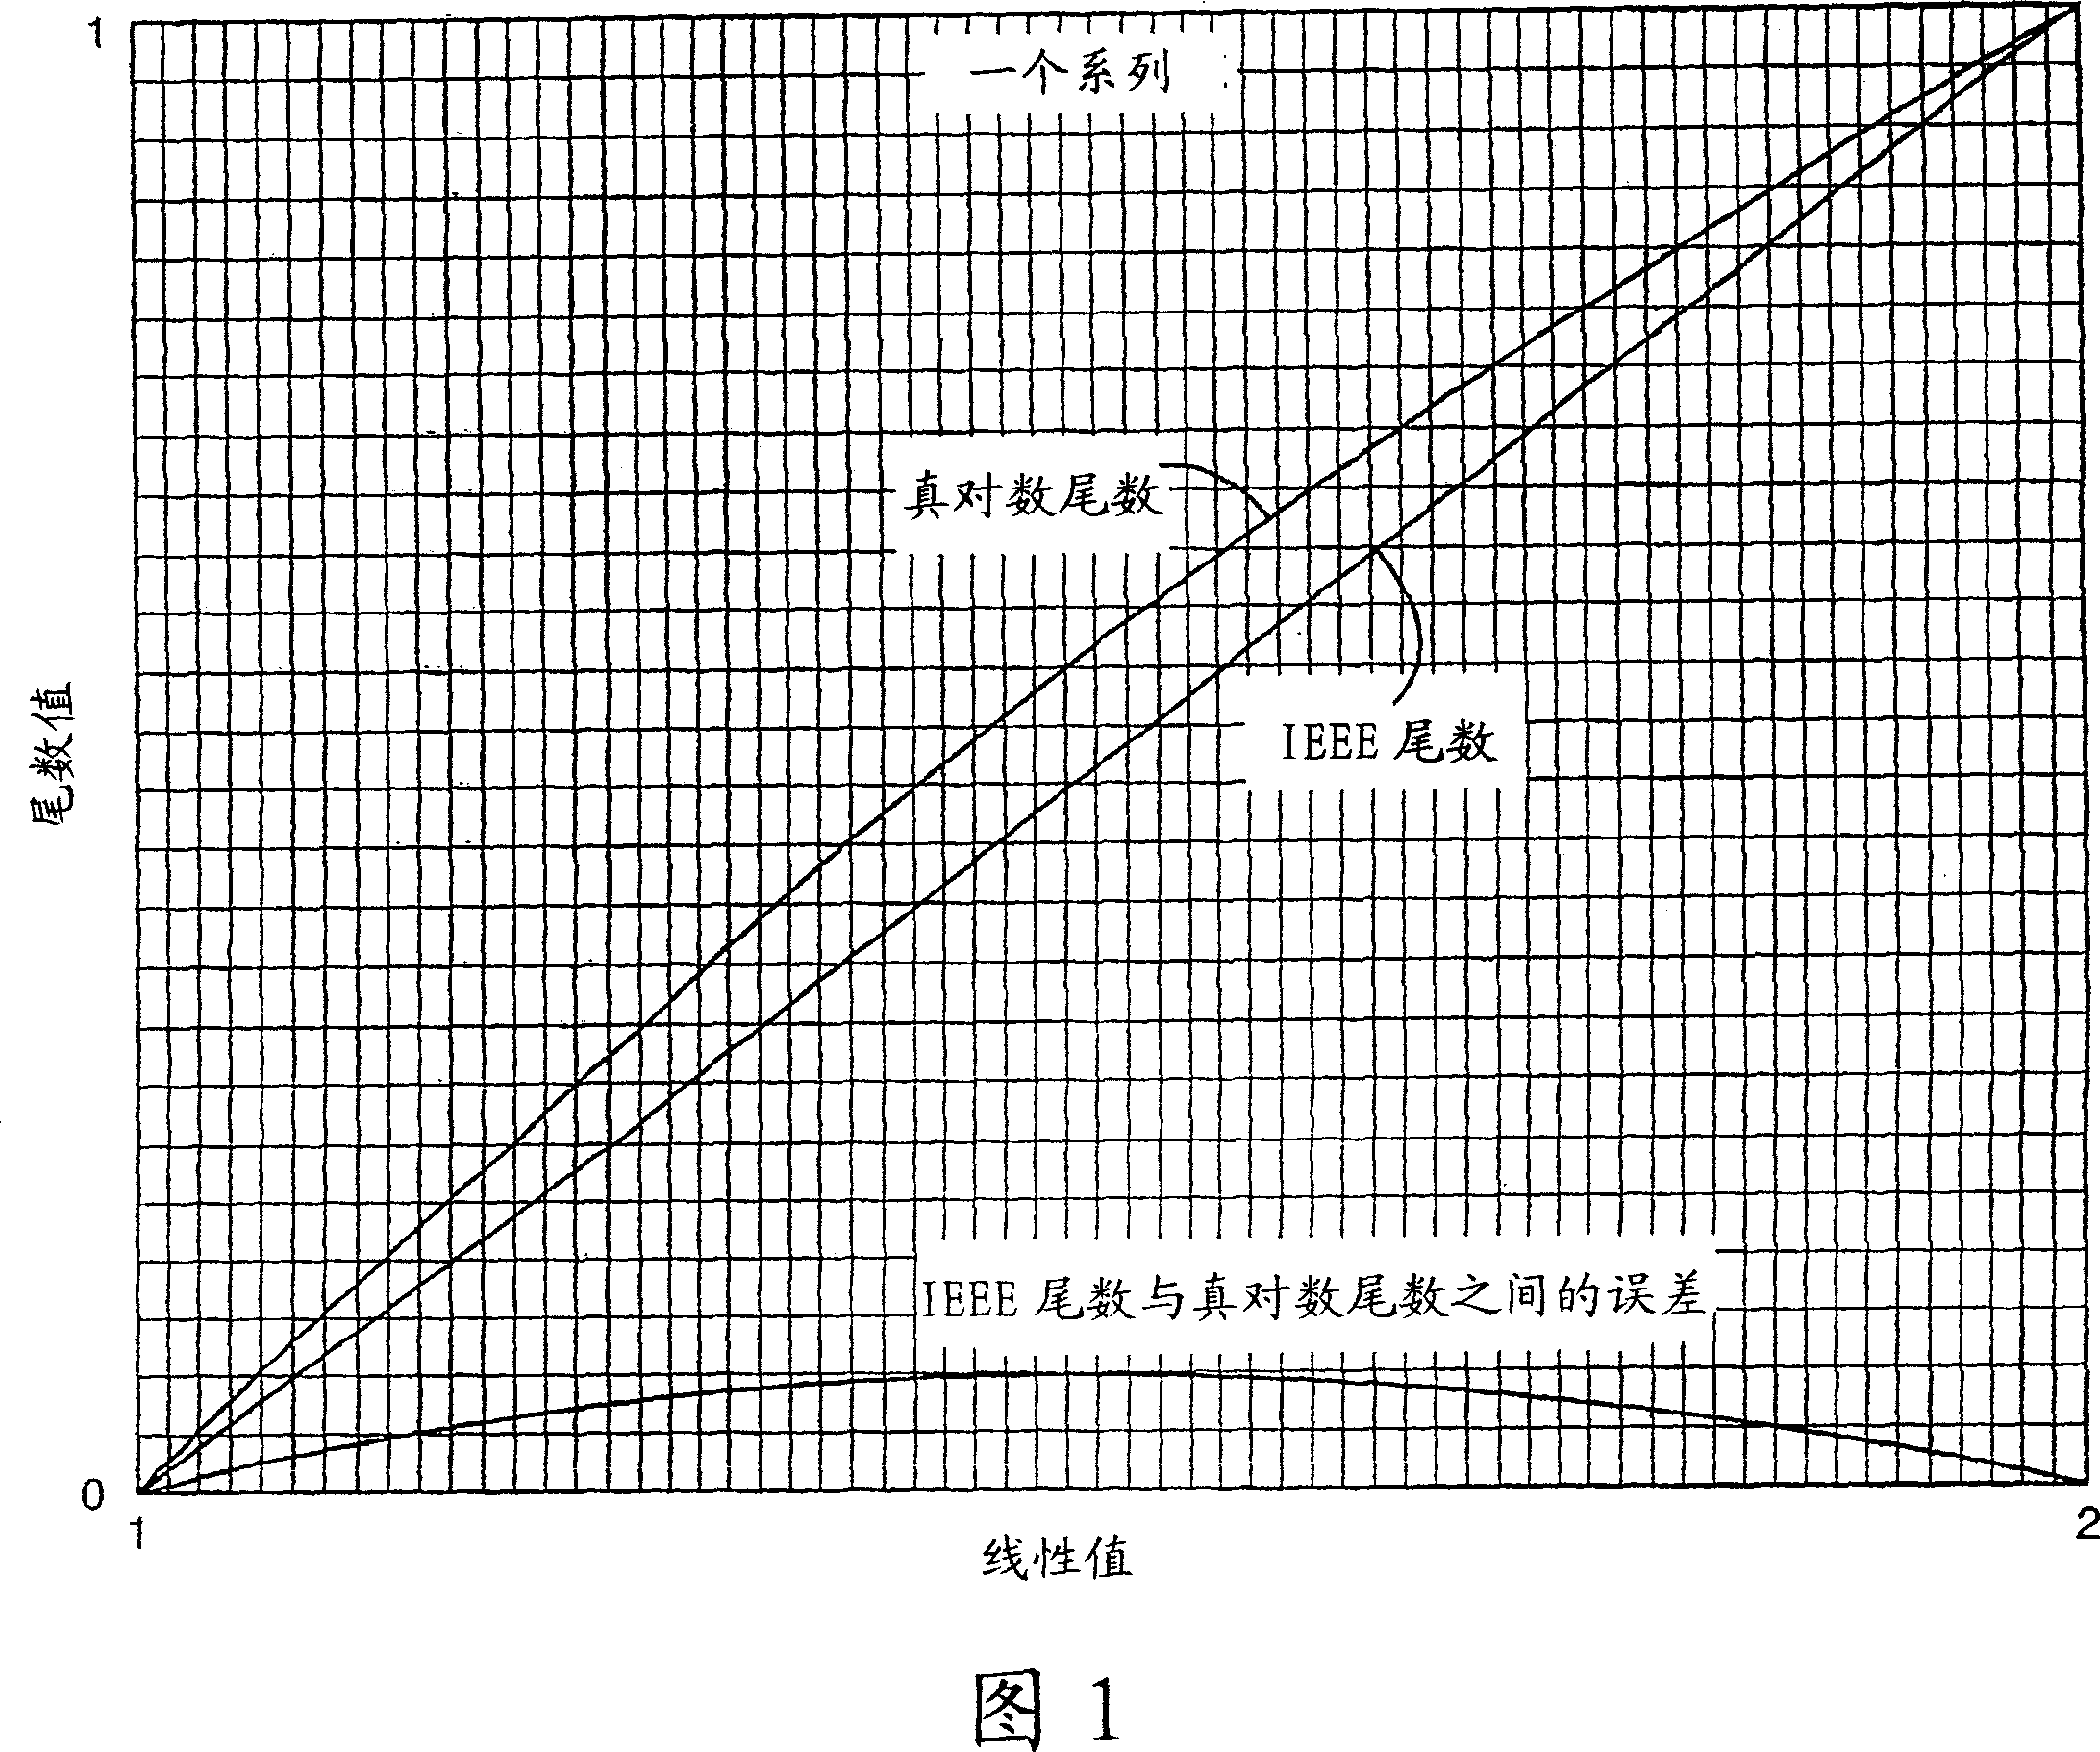 Complex logarithmic ALU